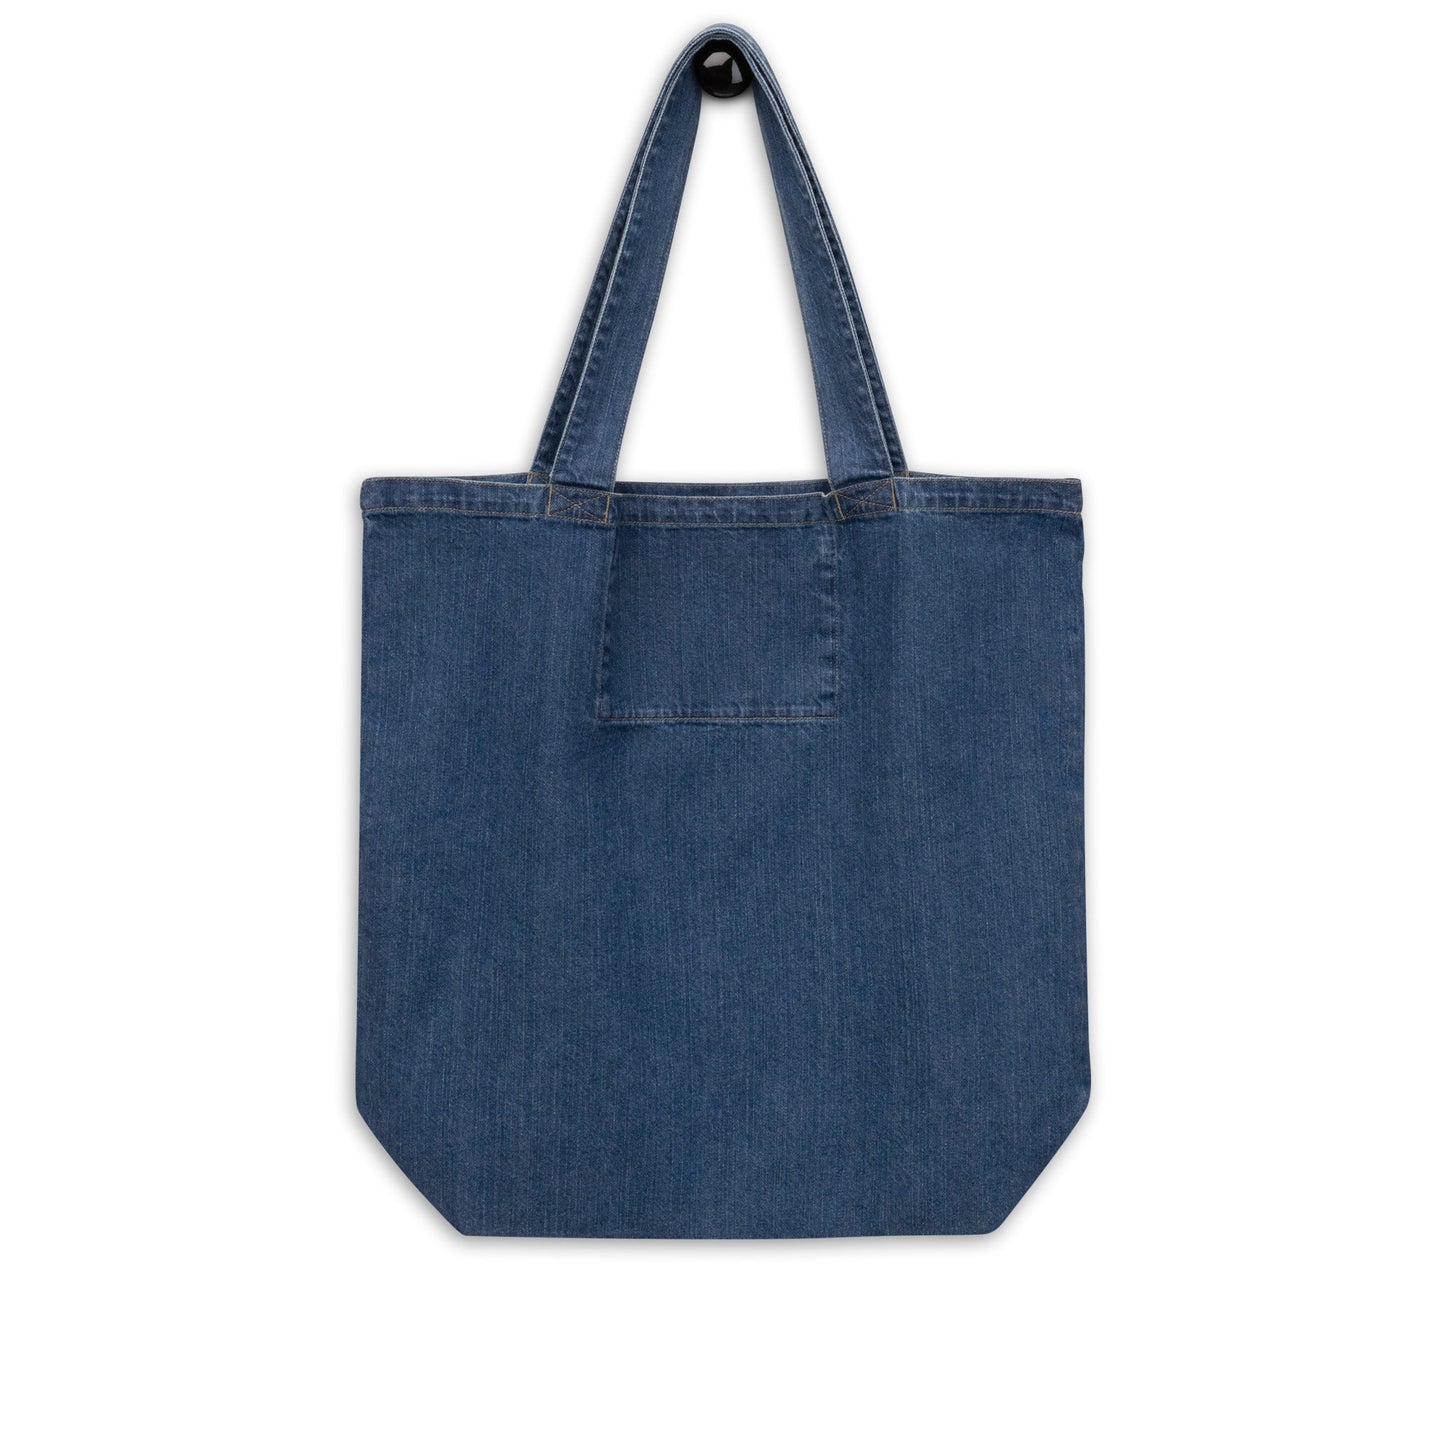 Organic denim tote bag (Personalized)